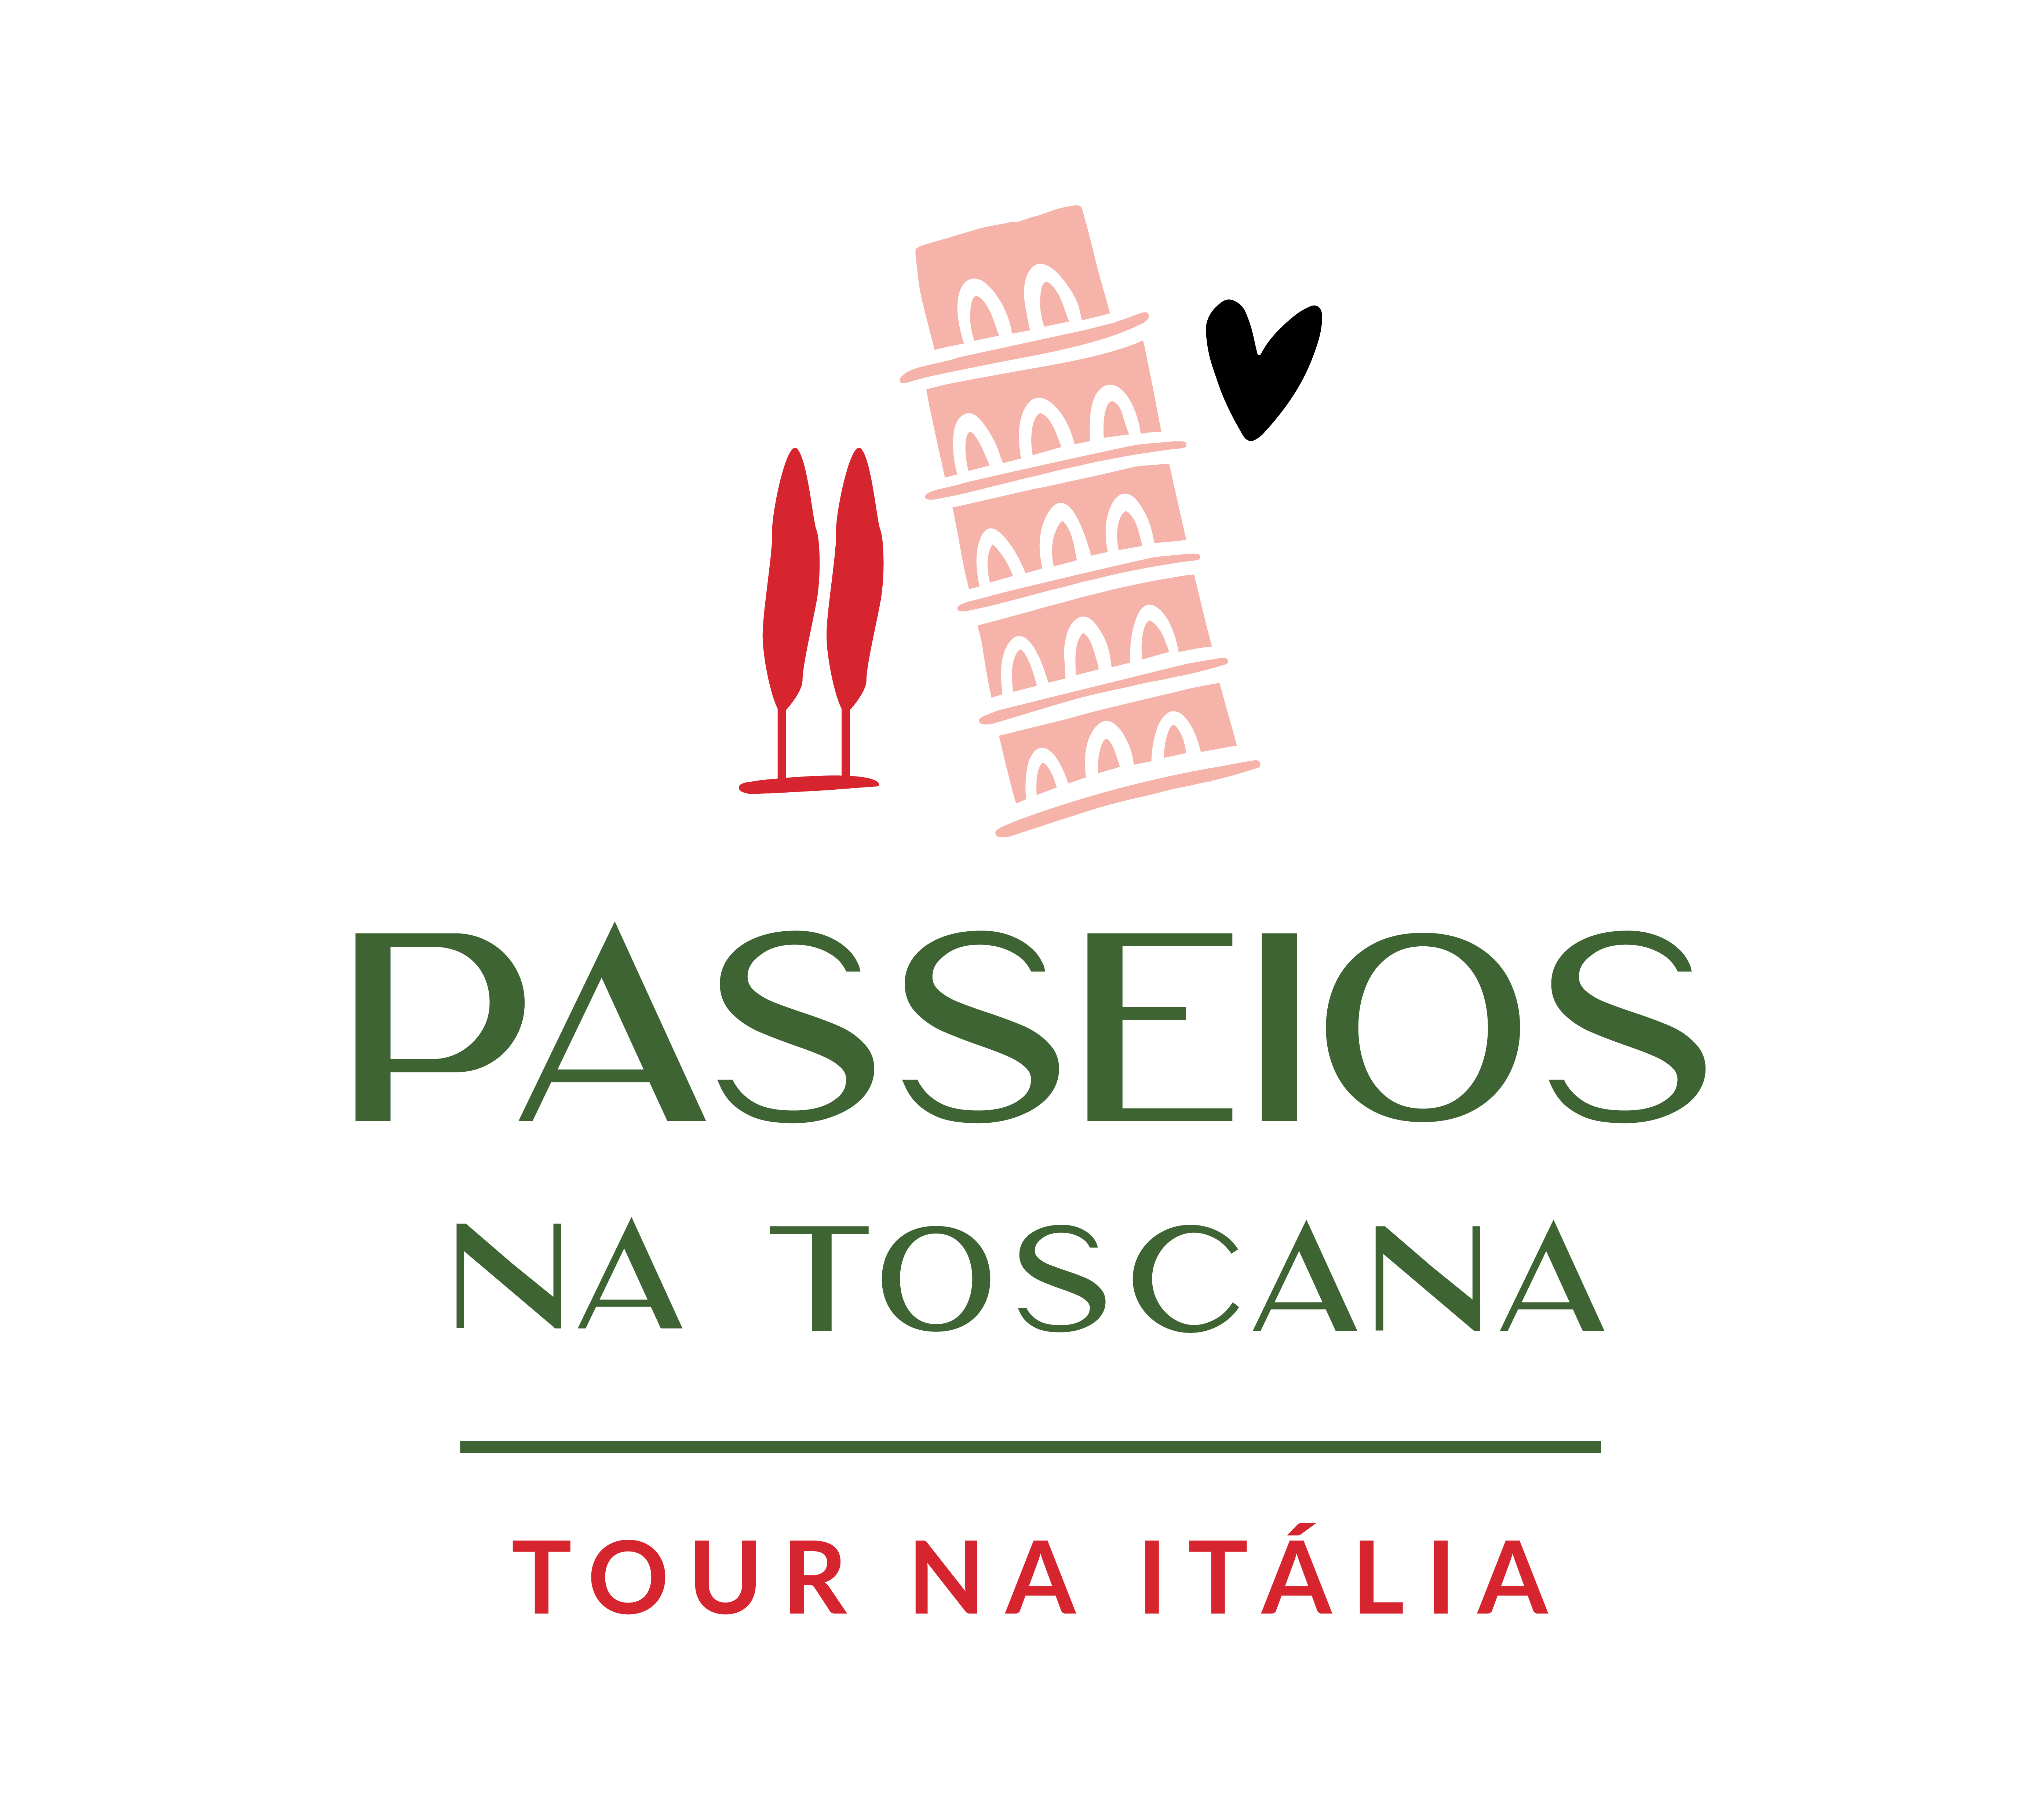 https://vinhoitaliano.com/wp-content/uploads/2021/08/marca-passeios-na-toscana.png